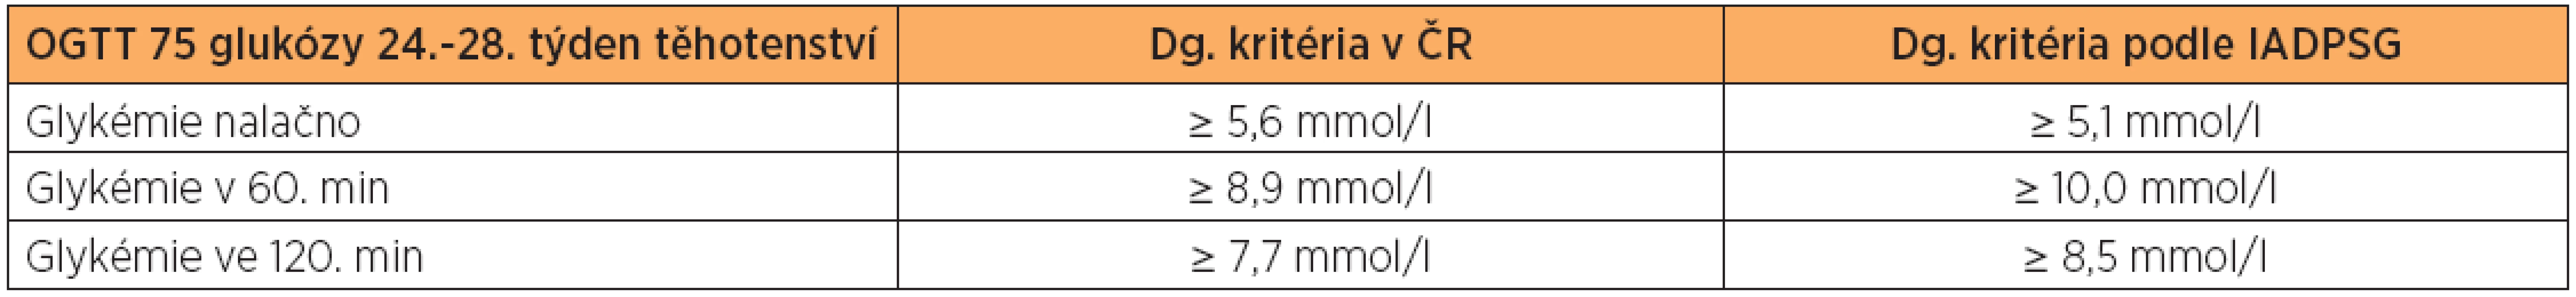 Srovnání diagnostikých kritérií GDM podle dosud platných kritérií v ČR a podle International Association of Diabetes and Pregnancy Study Groups (IADPSG)